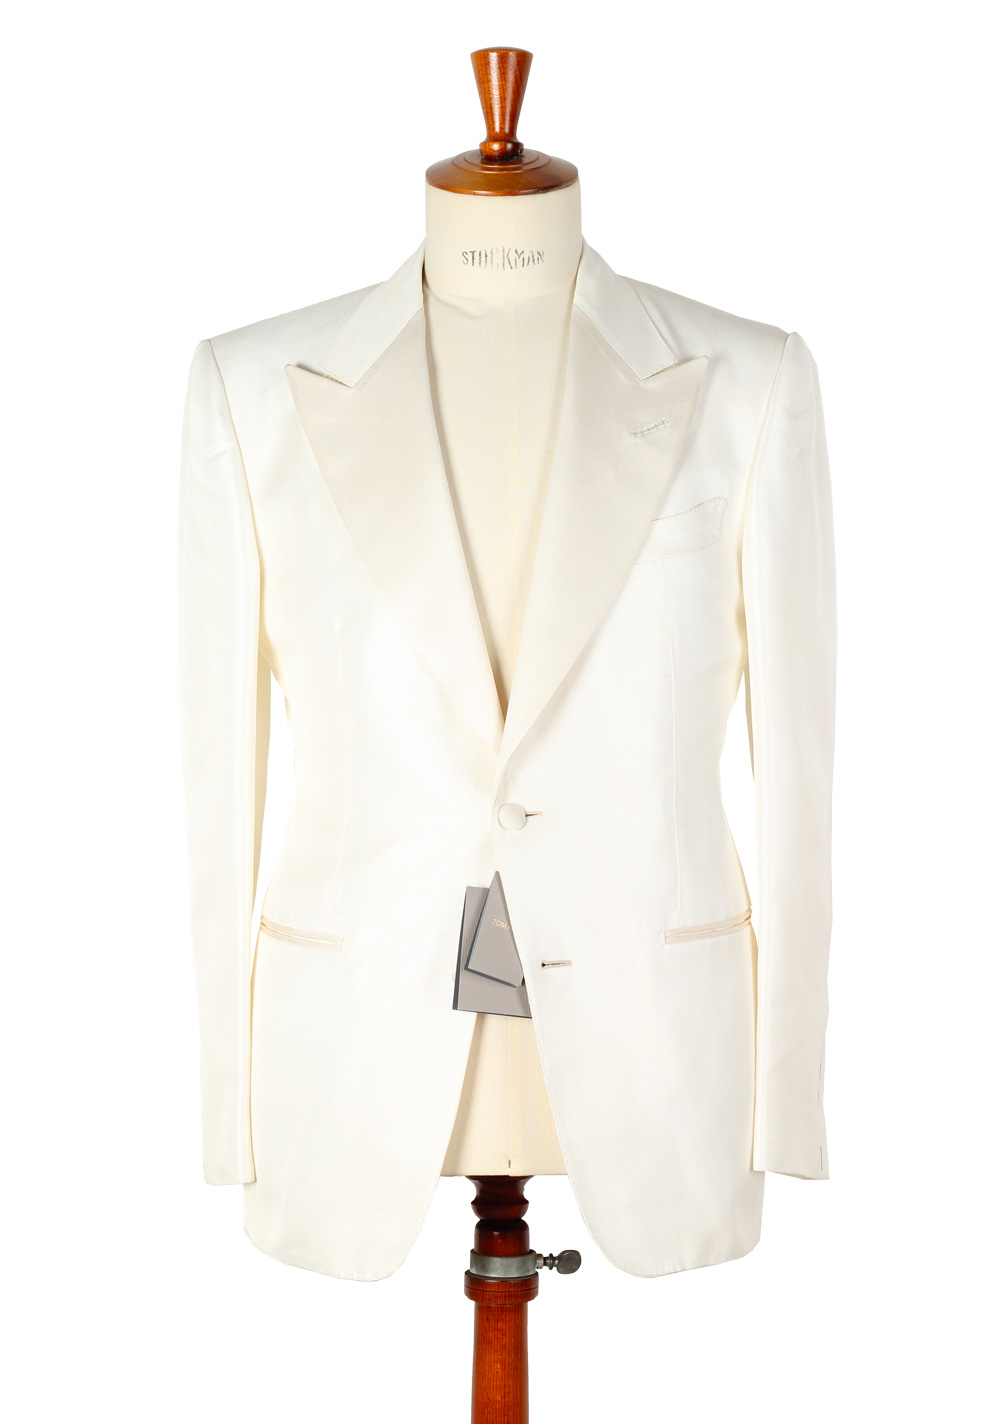 FORD Off White James Bond Spectre Sport Coat Tuxedo Dinner Jacket Size 48 / 38R U.S.